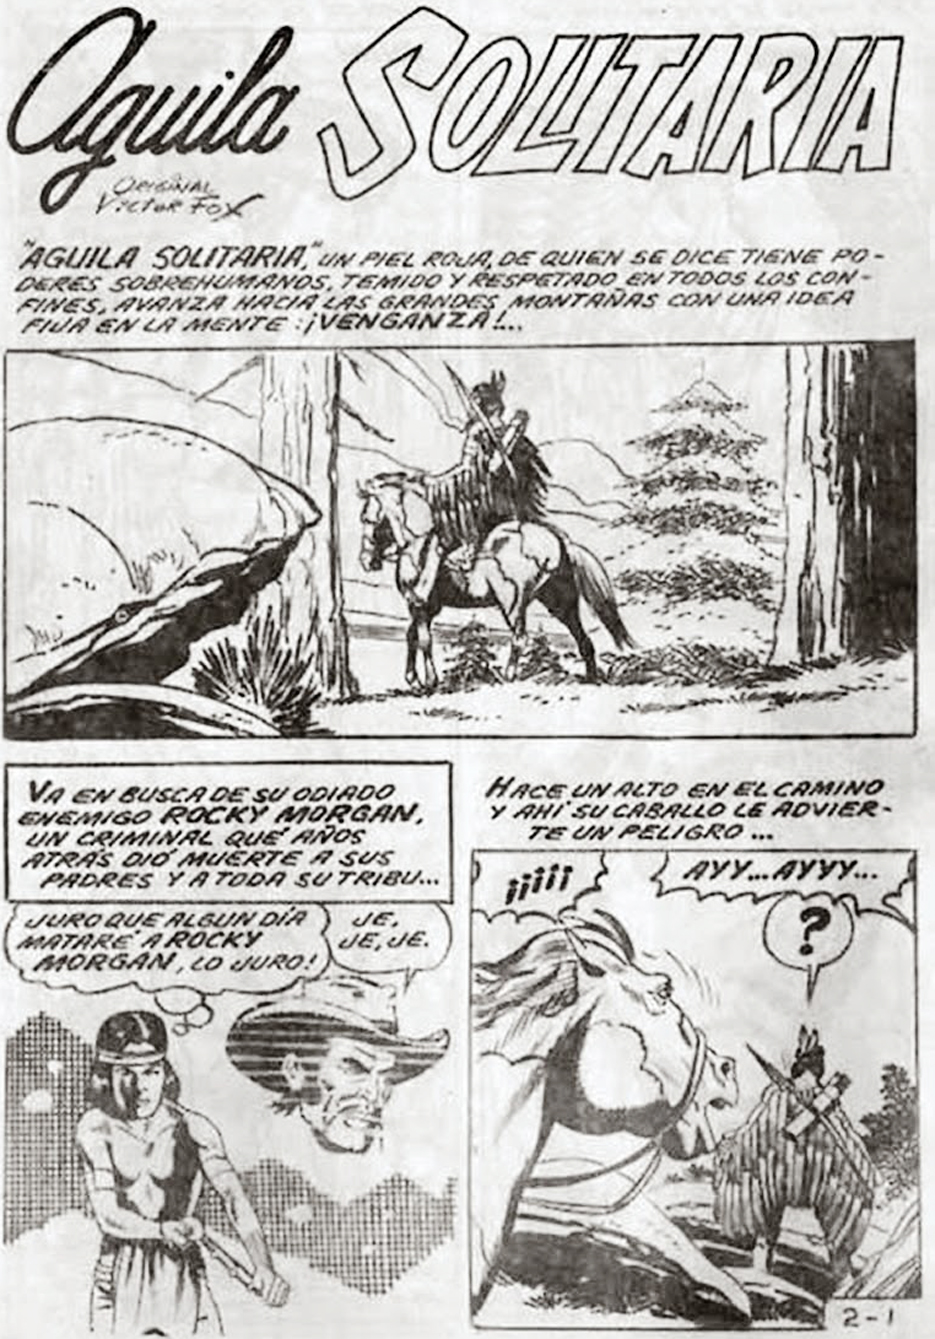 Águila Solitaria, un clásico de la historieta mexicana | Los comics de  Machete